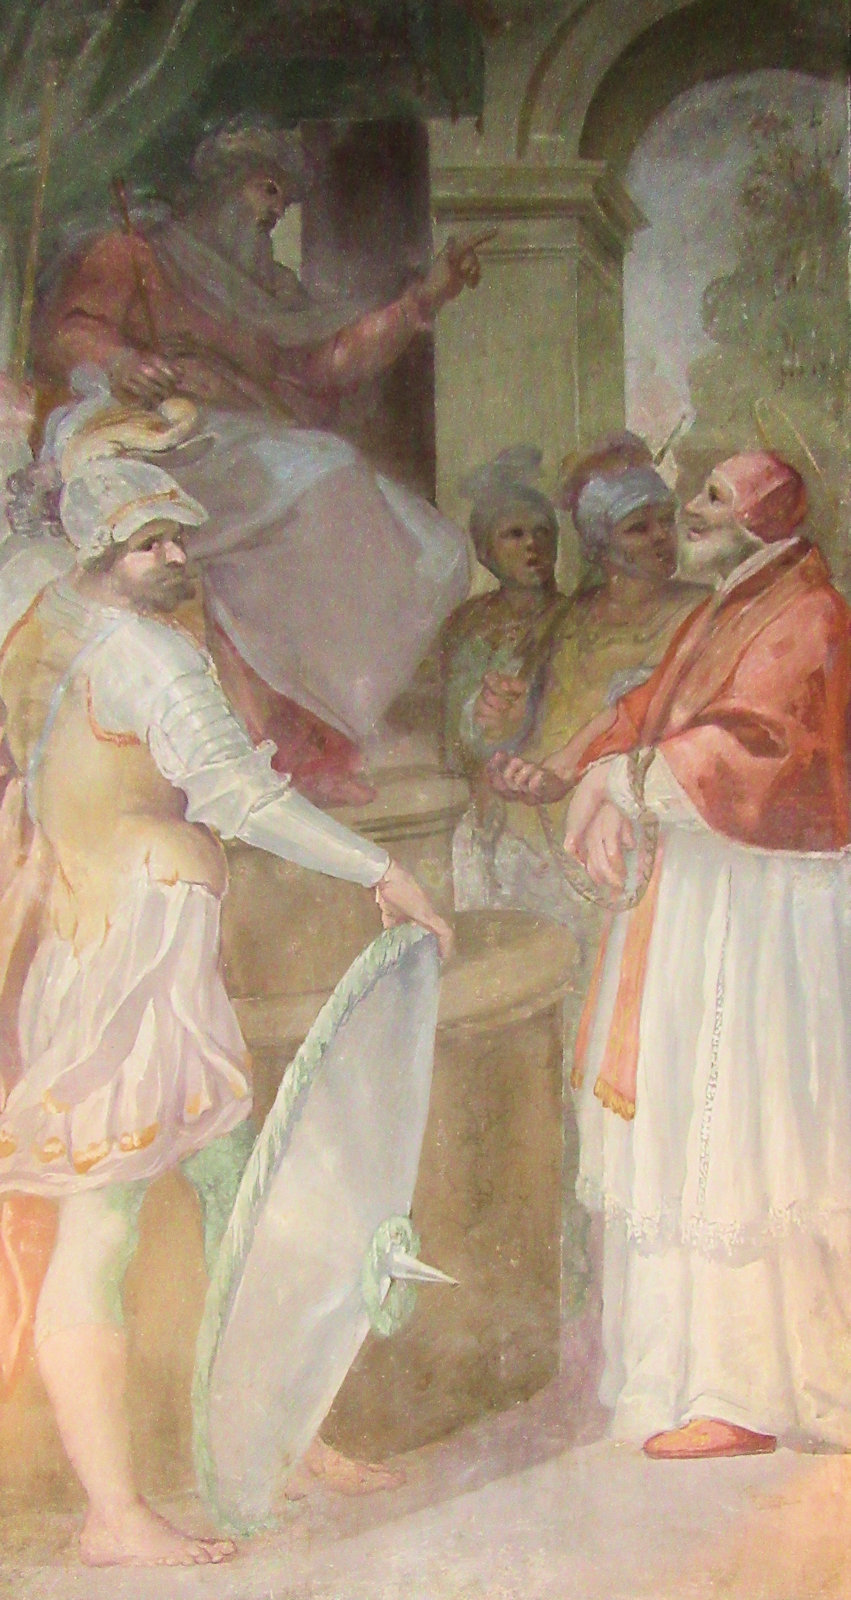 Anicetus vor dem Richter, Fresko in der Anicetus geweihten Kapelle des Palazzo Altemps in Rom